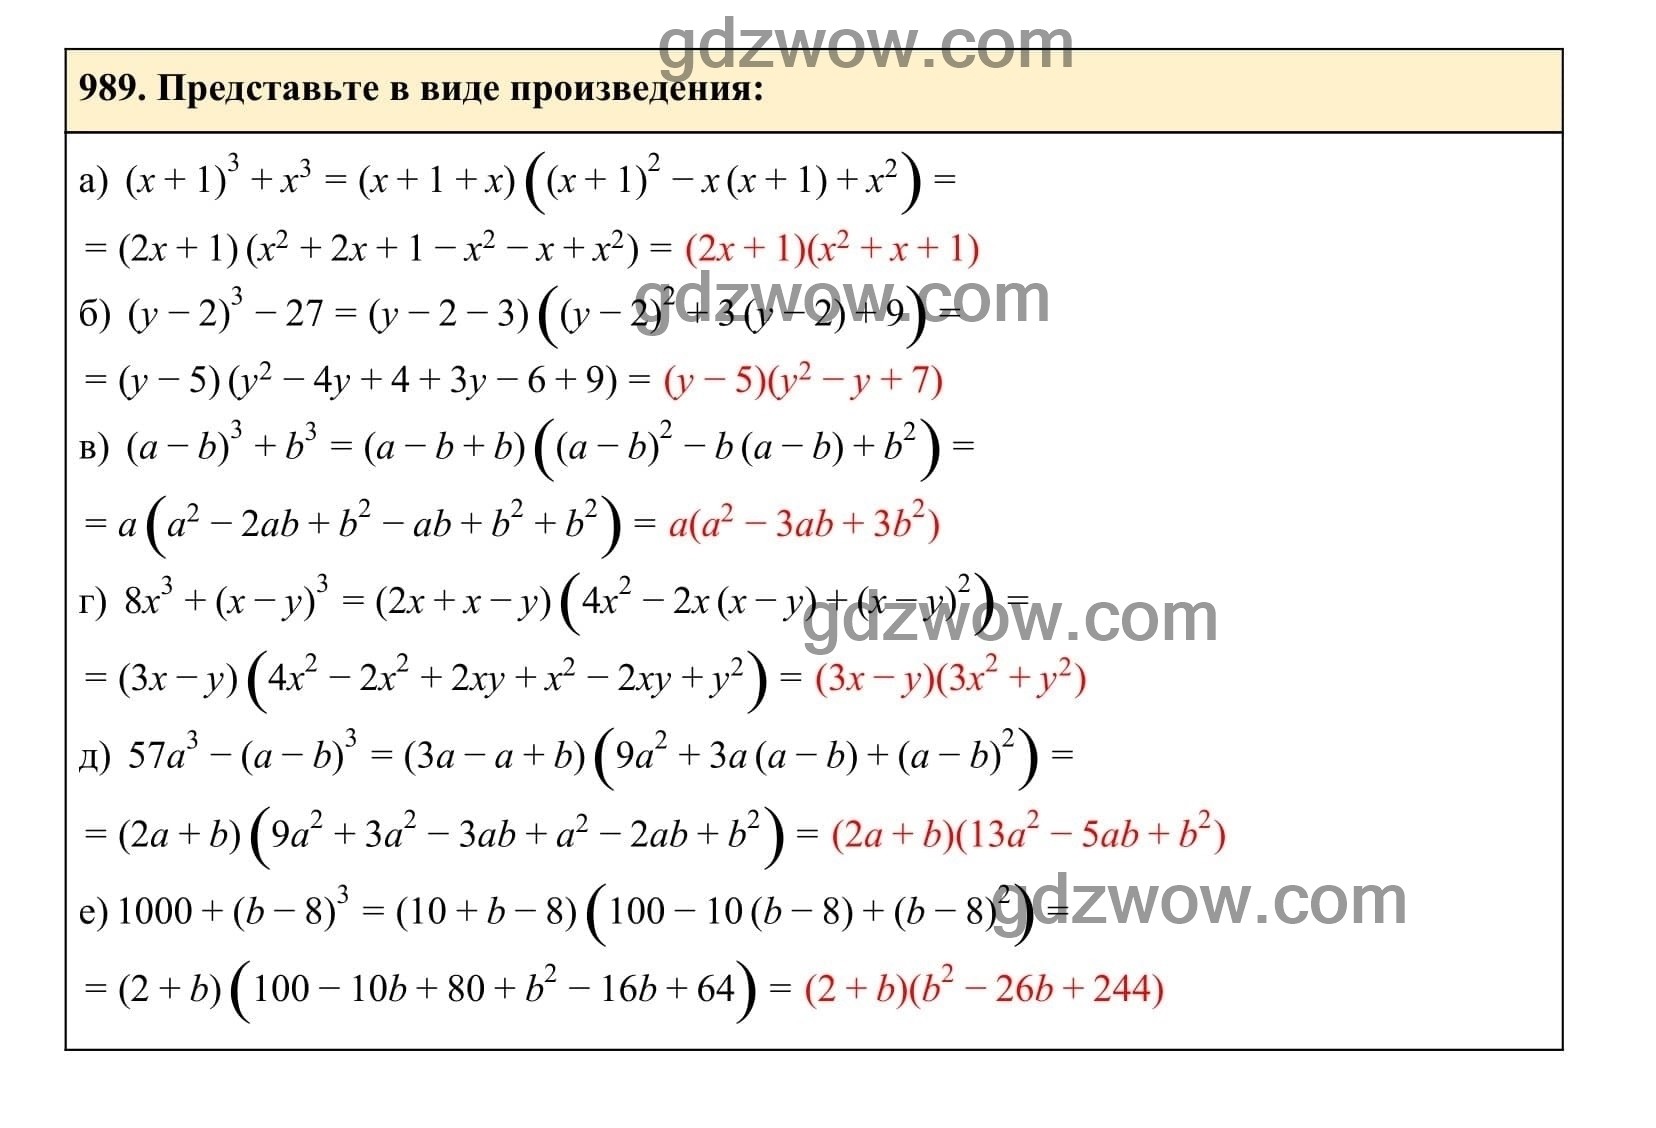 Упражнение 989 - ГДЗ по Алгебре 7 класс Учебник Макарычев (решебник) - GDZwow